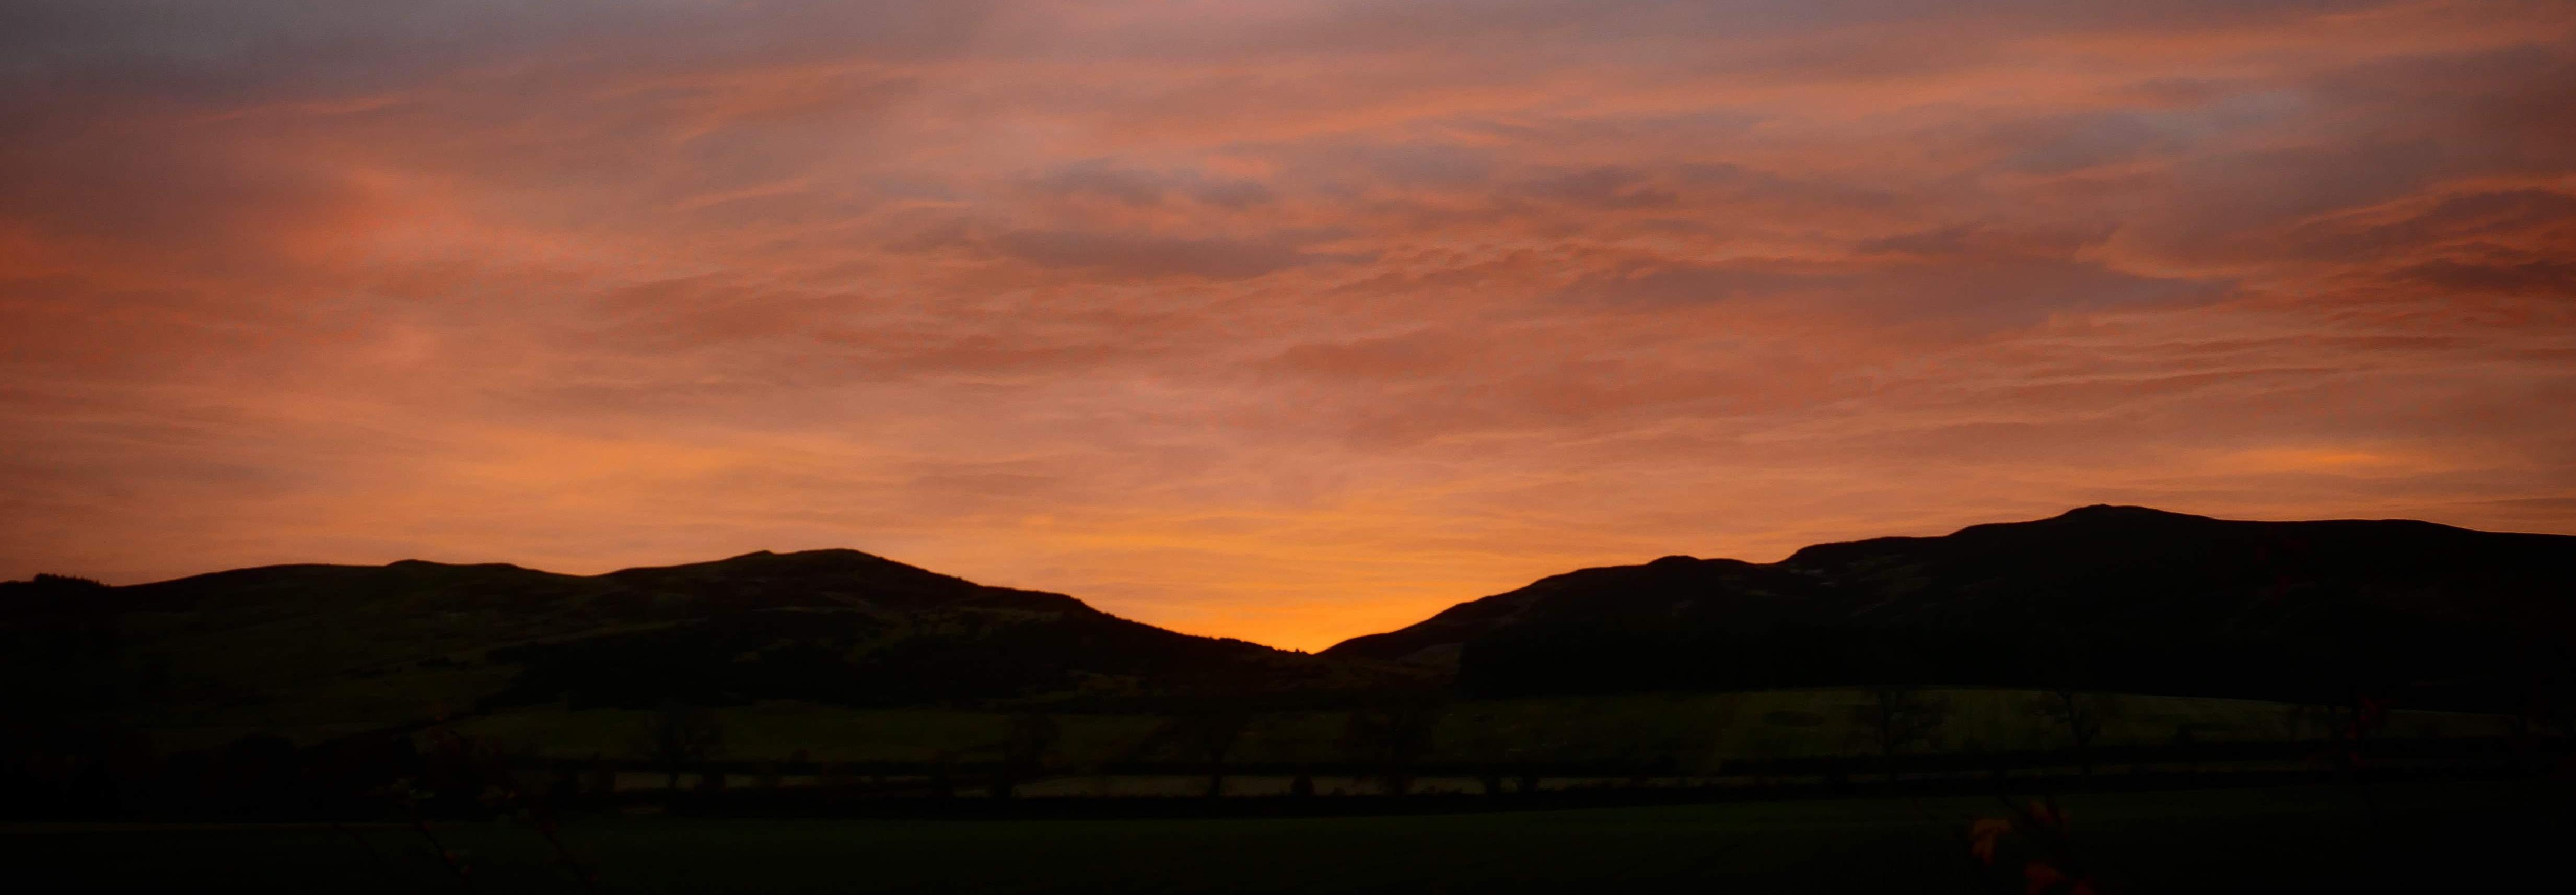 Sunrise in rural Scotland